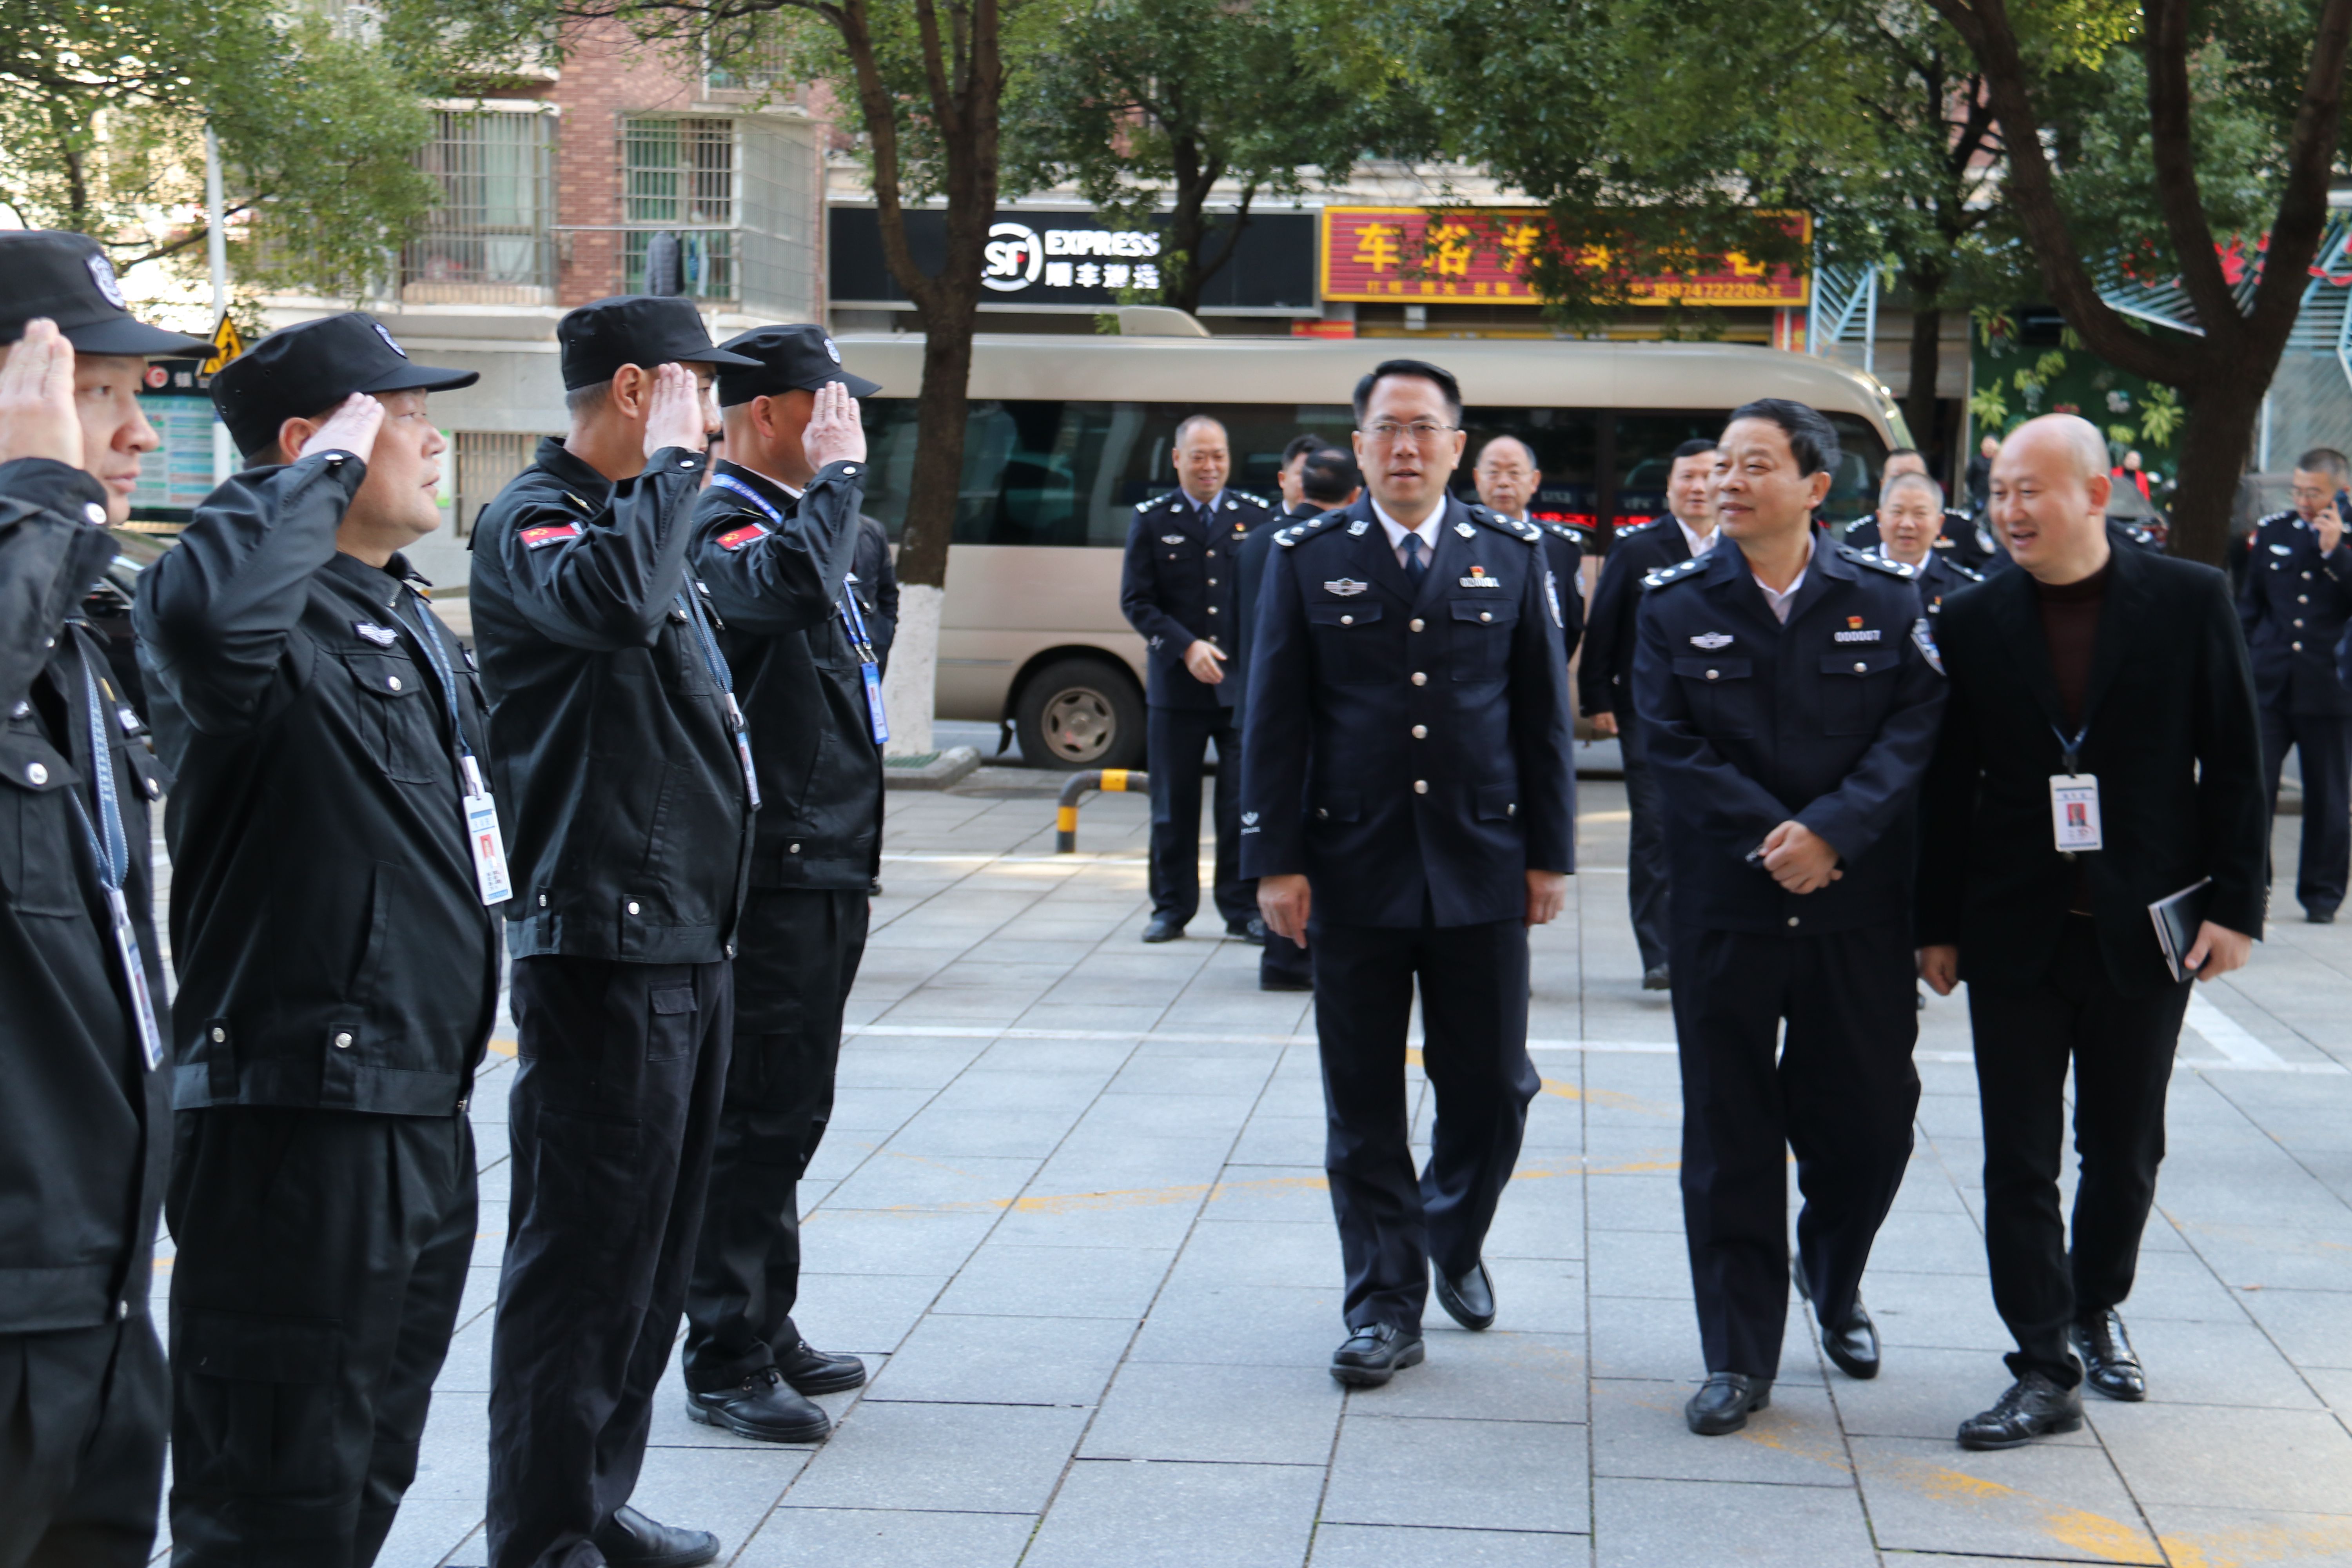 市人大常委会主任谭志桂赴市公安局调研道路交通安全管理立法和疫情防控工作